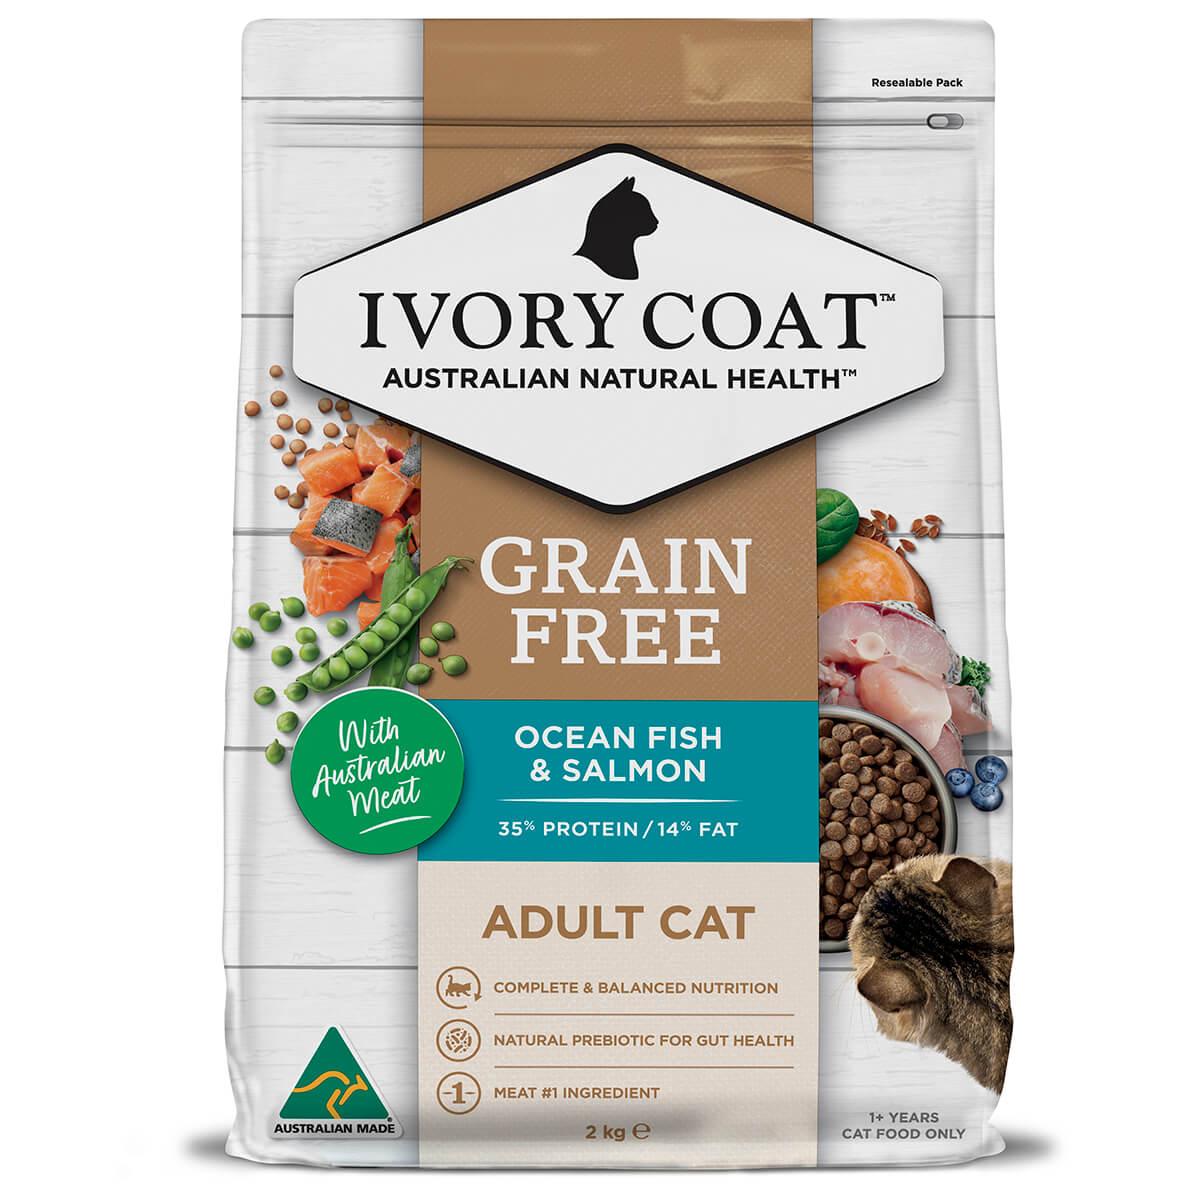 Ivory Coat Grain Free Adult Ocean Fish & Salmon Dry Cat Food